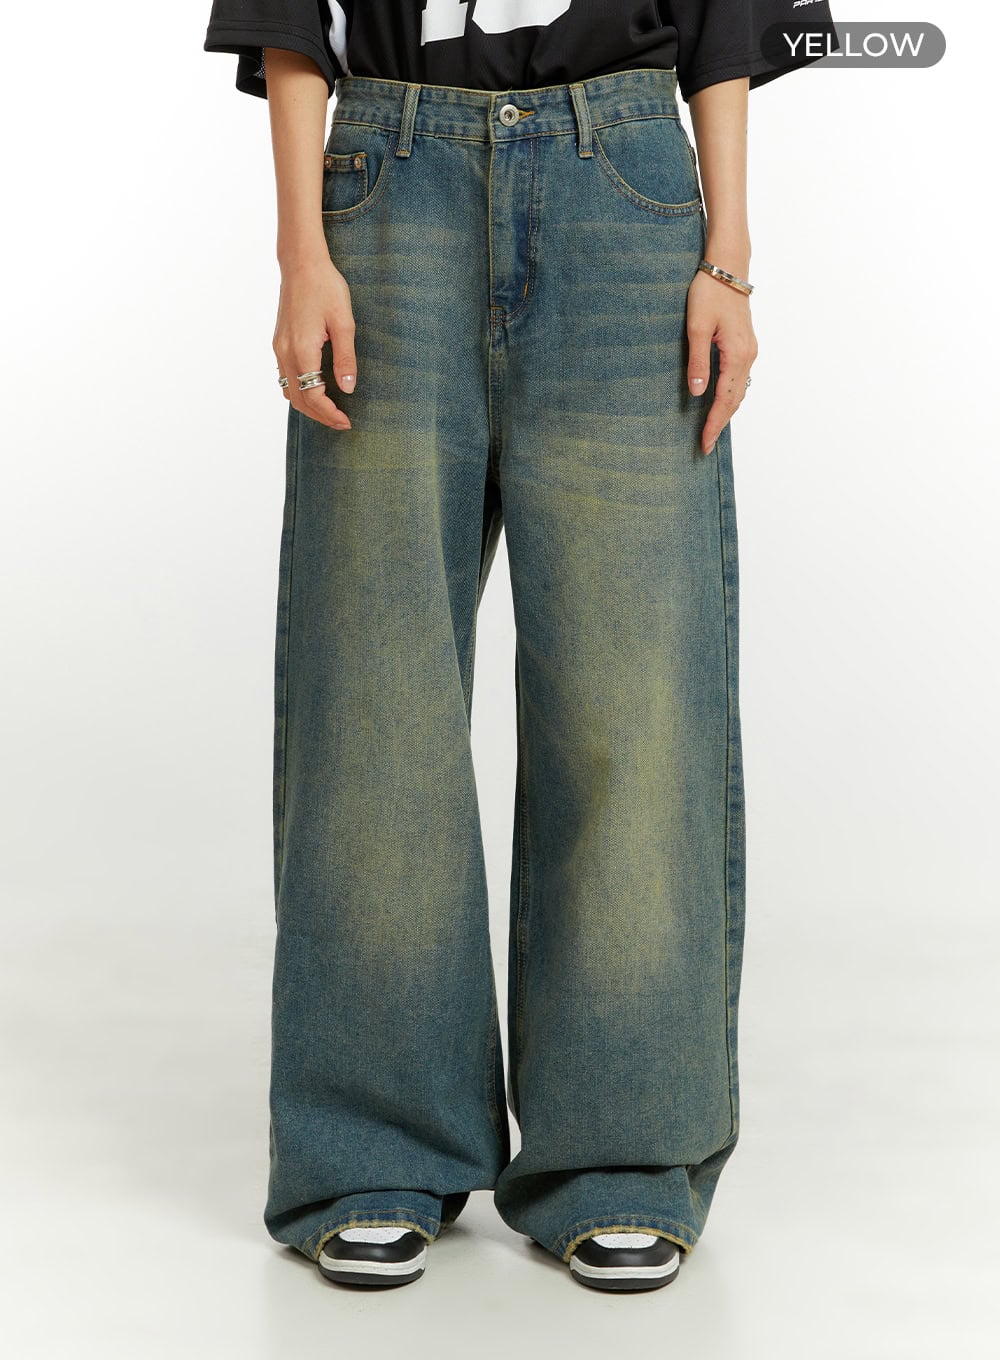 vintage-low-rise-baggy-jeans-cu421